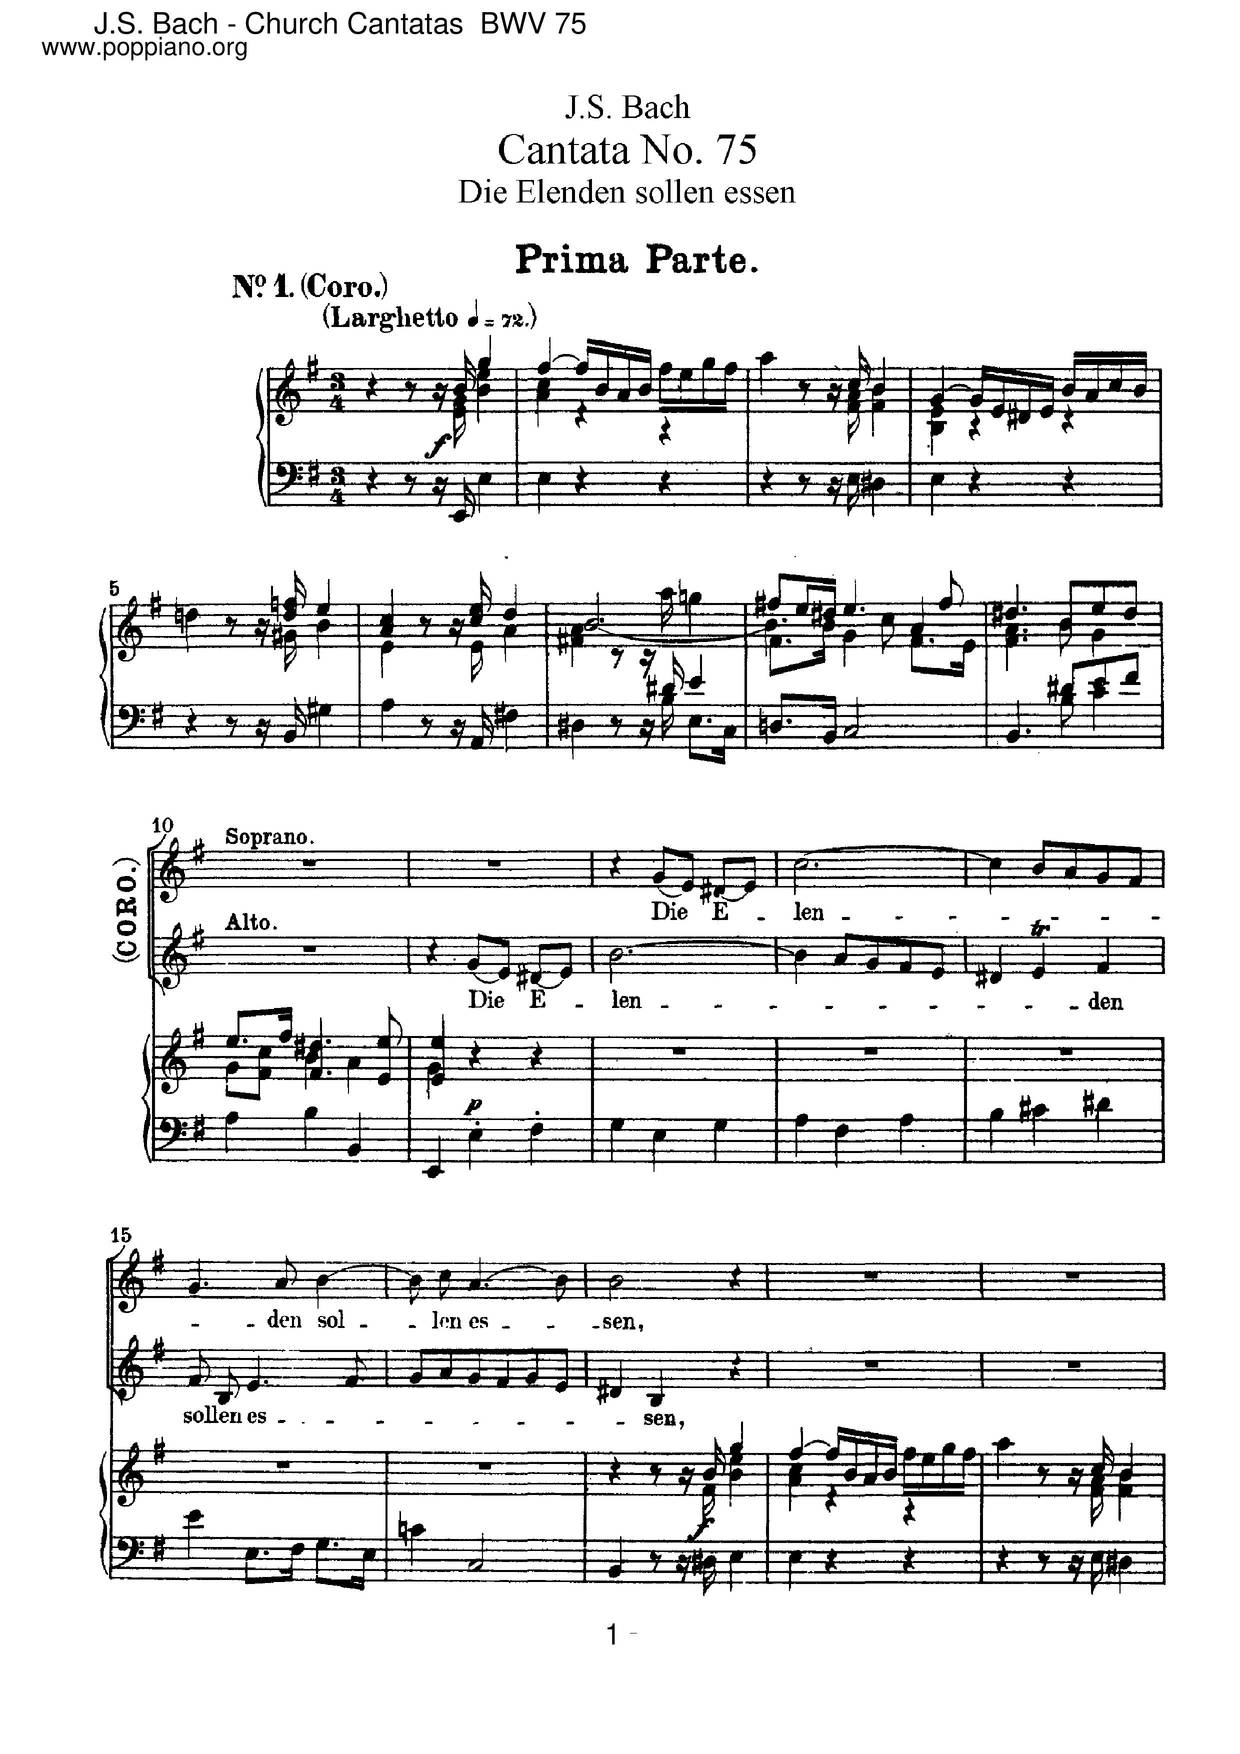 Die Elenden Sollen Essen, BWV 75 Score